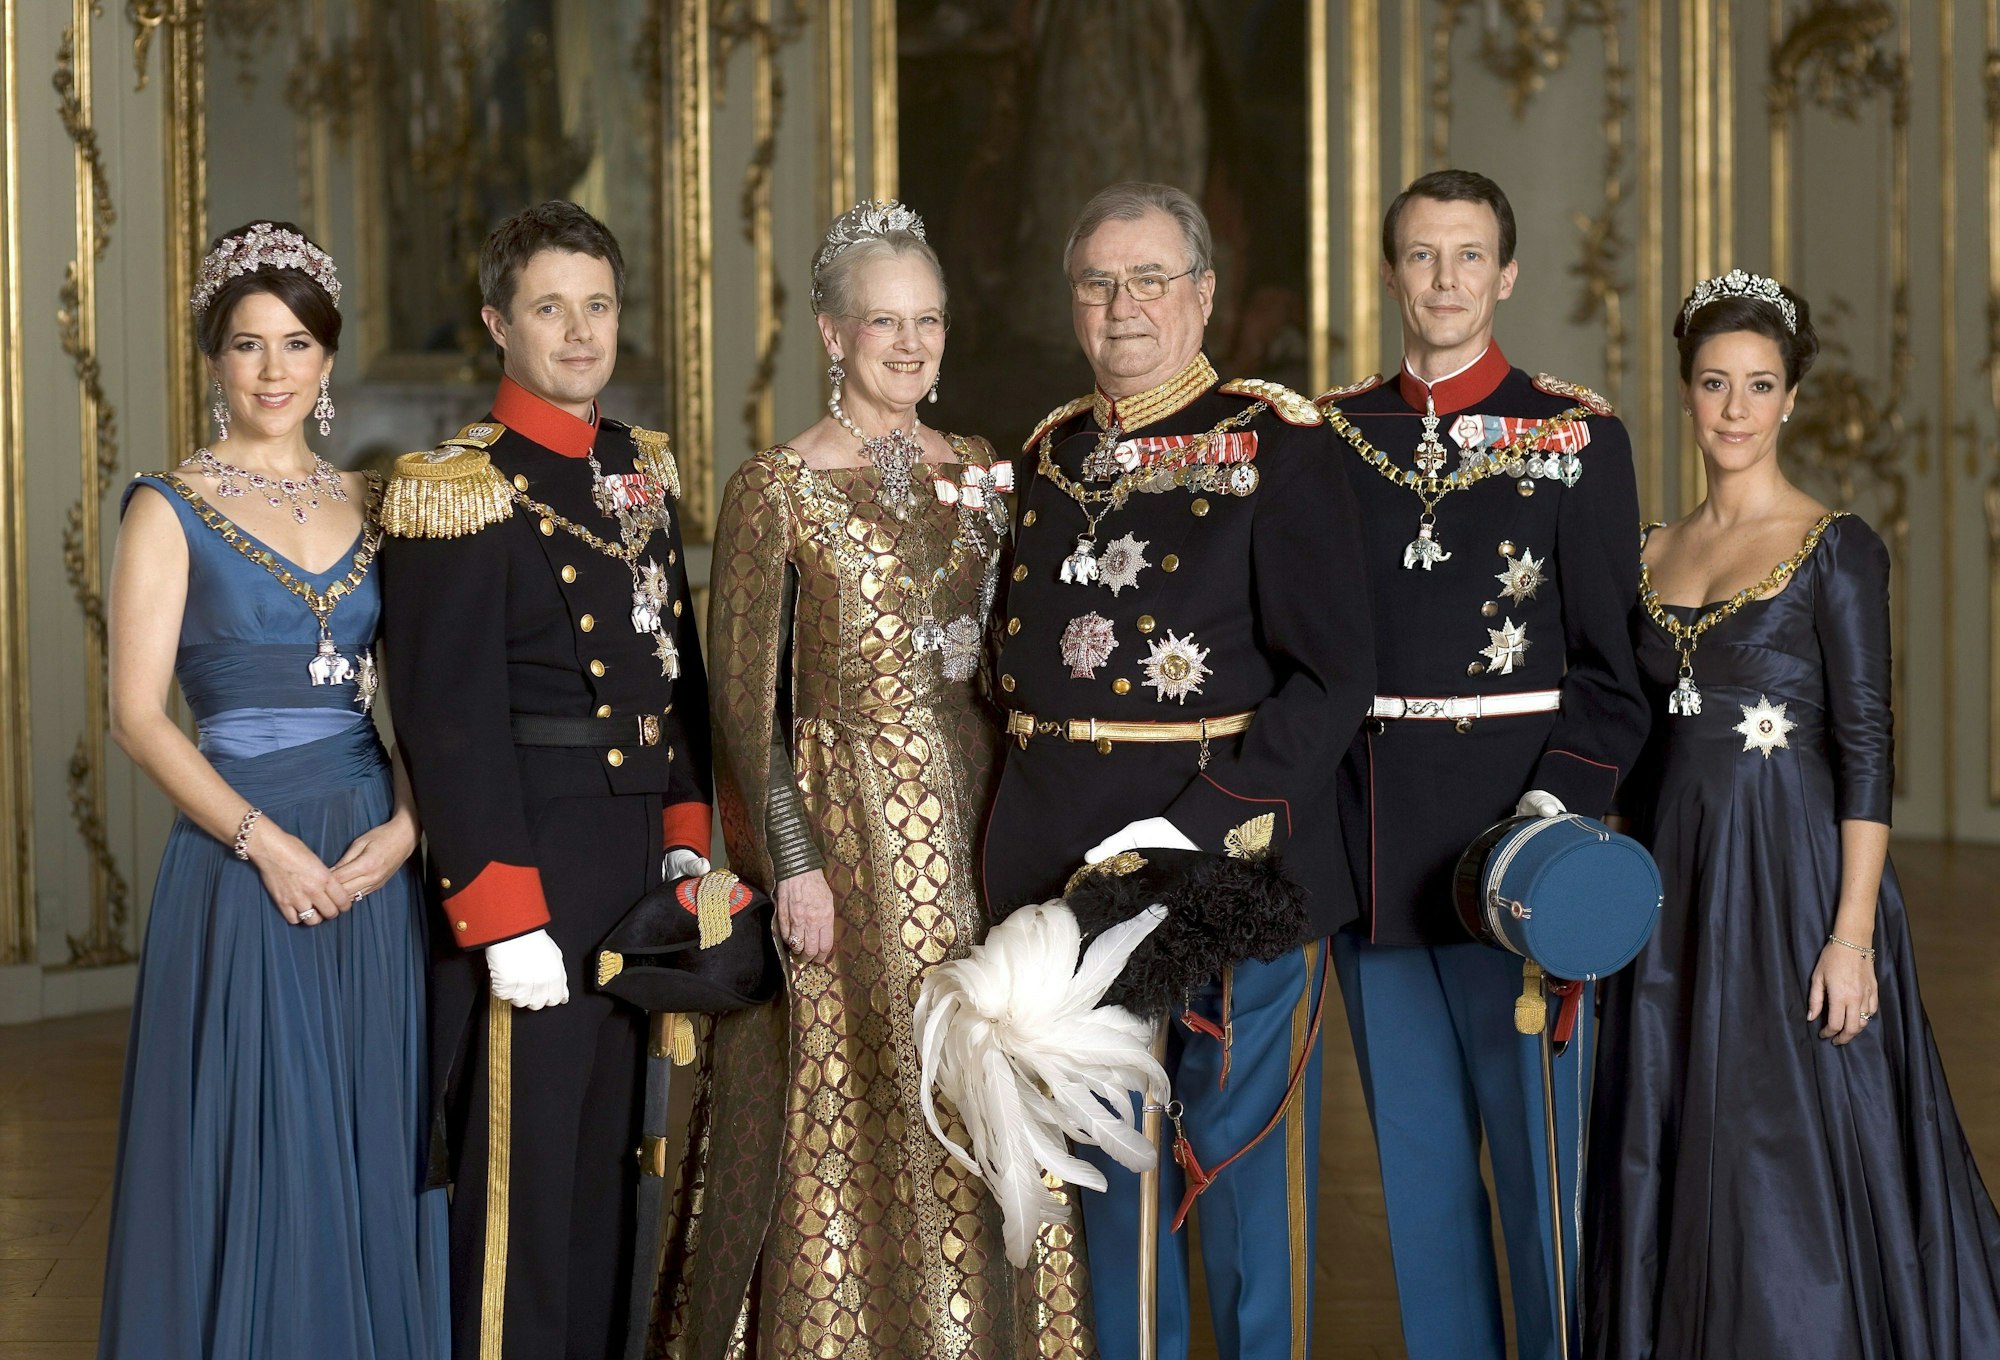 Das dänische Königshaus: Kronprinzessin Mary, Kronprinz Frederik, Königin Margrethe II., Prinz Henrik (†), Prinz Joachim und Prinzessin Marie (v.l.n.r.) im Amalienburg Palast in Kopenhagen.